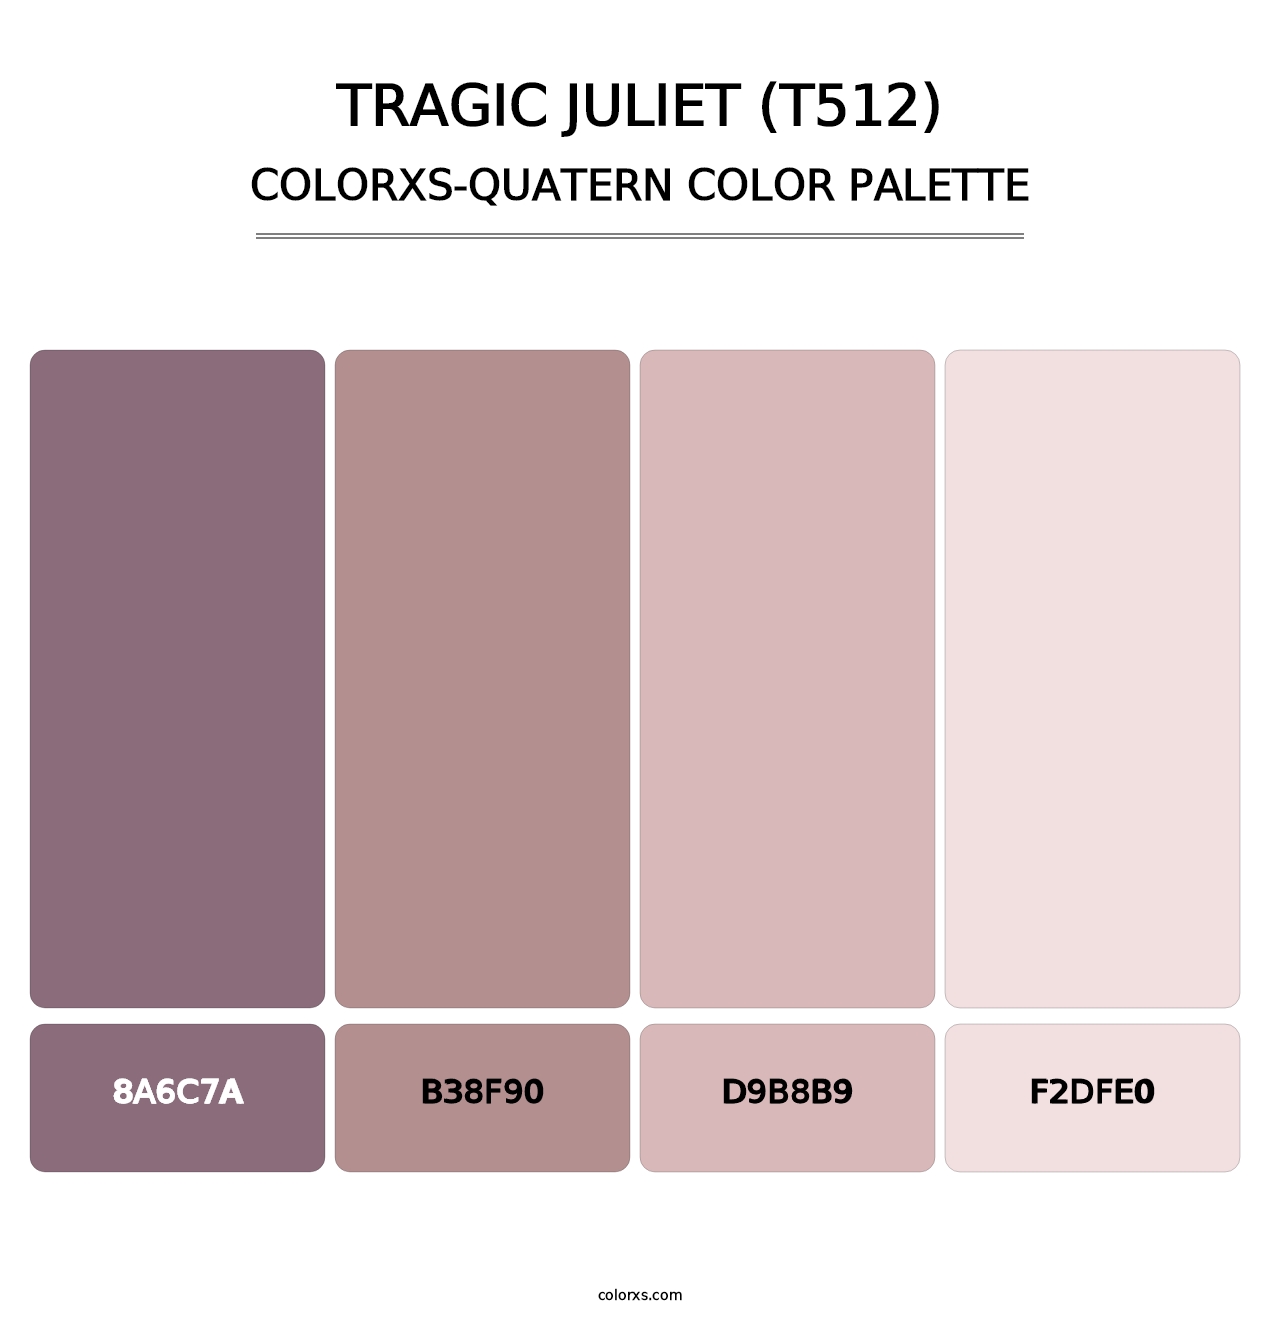 Tragic Juliet (T512) - Colorxs Quatern Palette